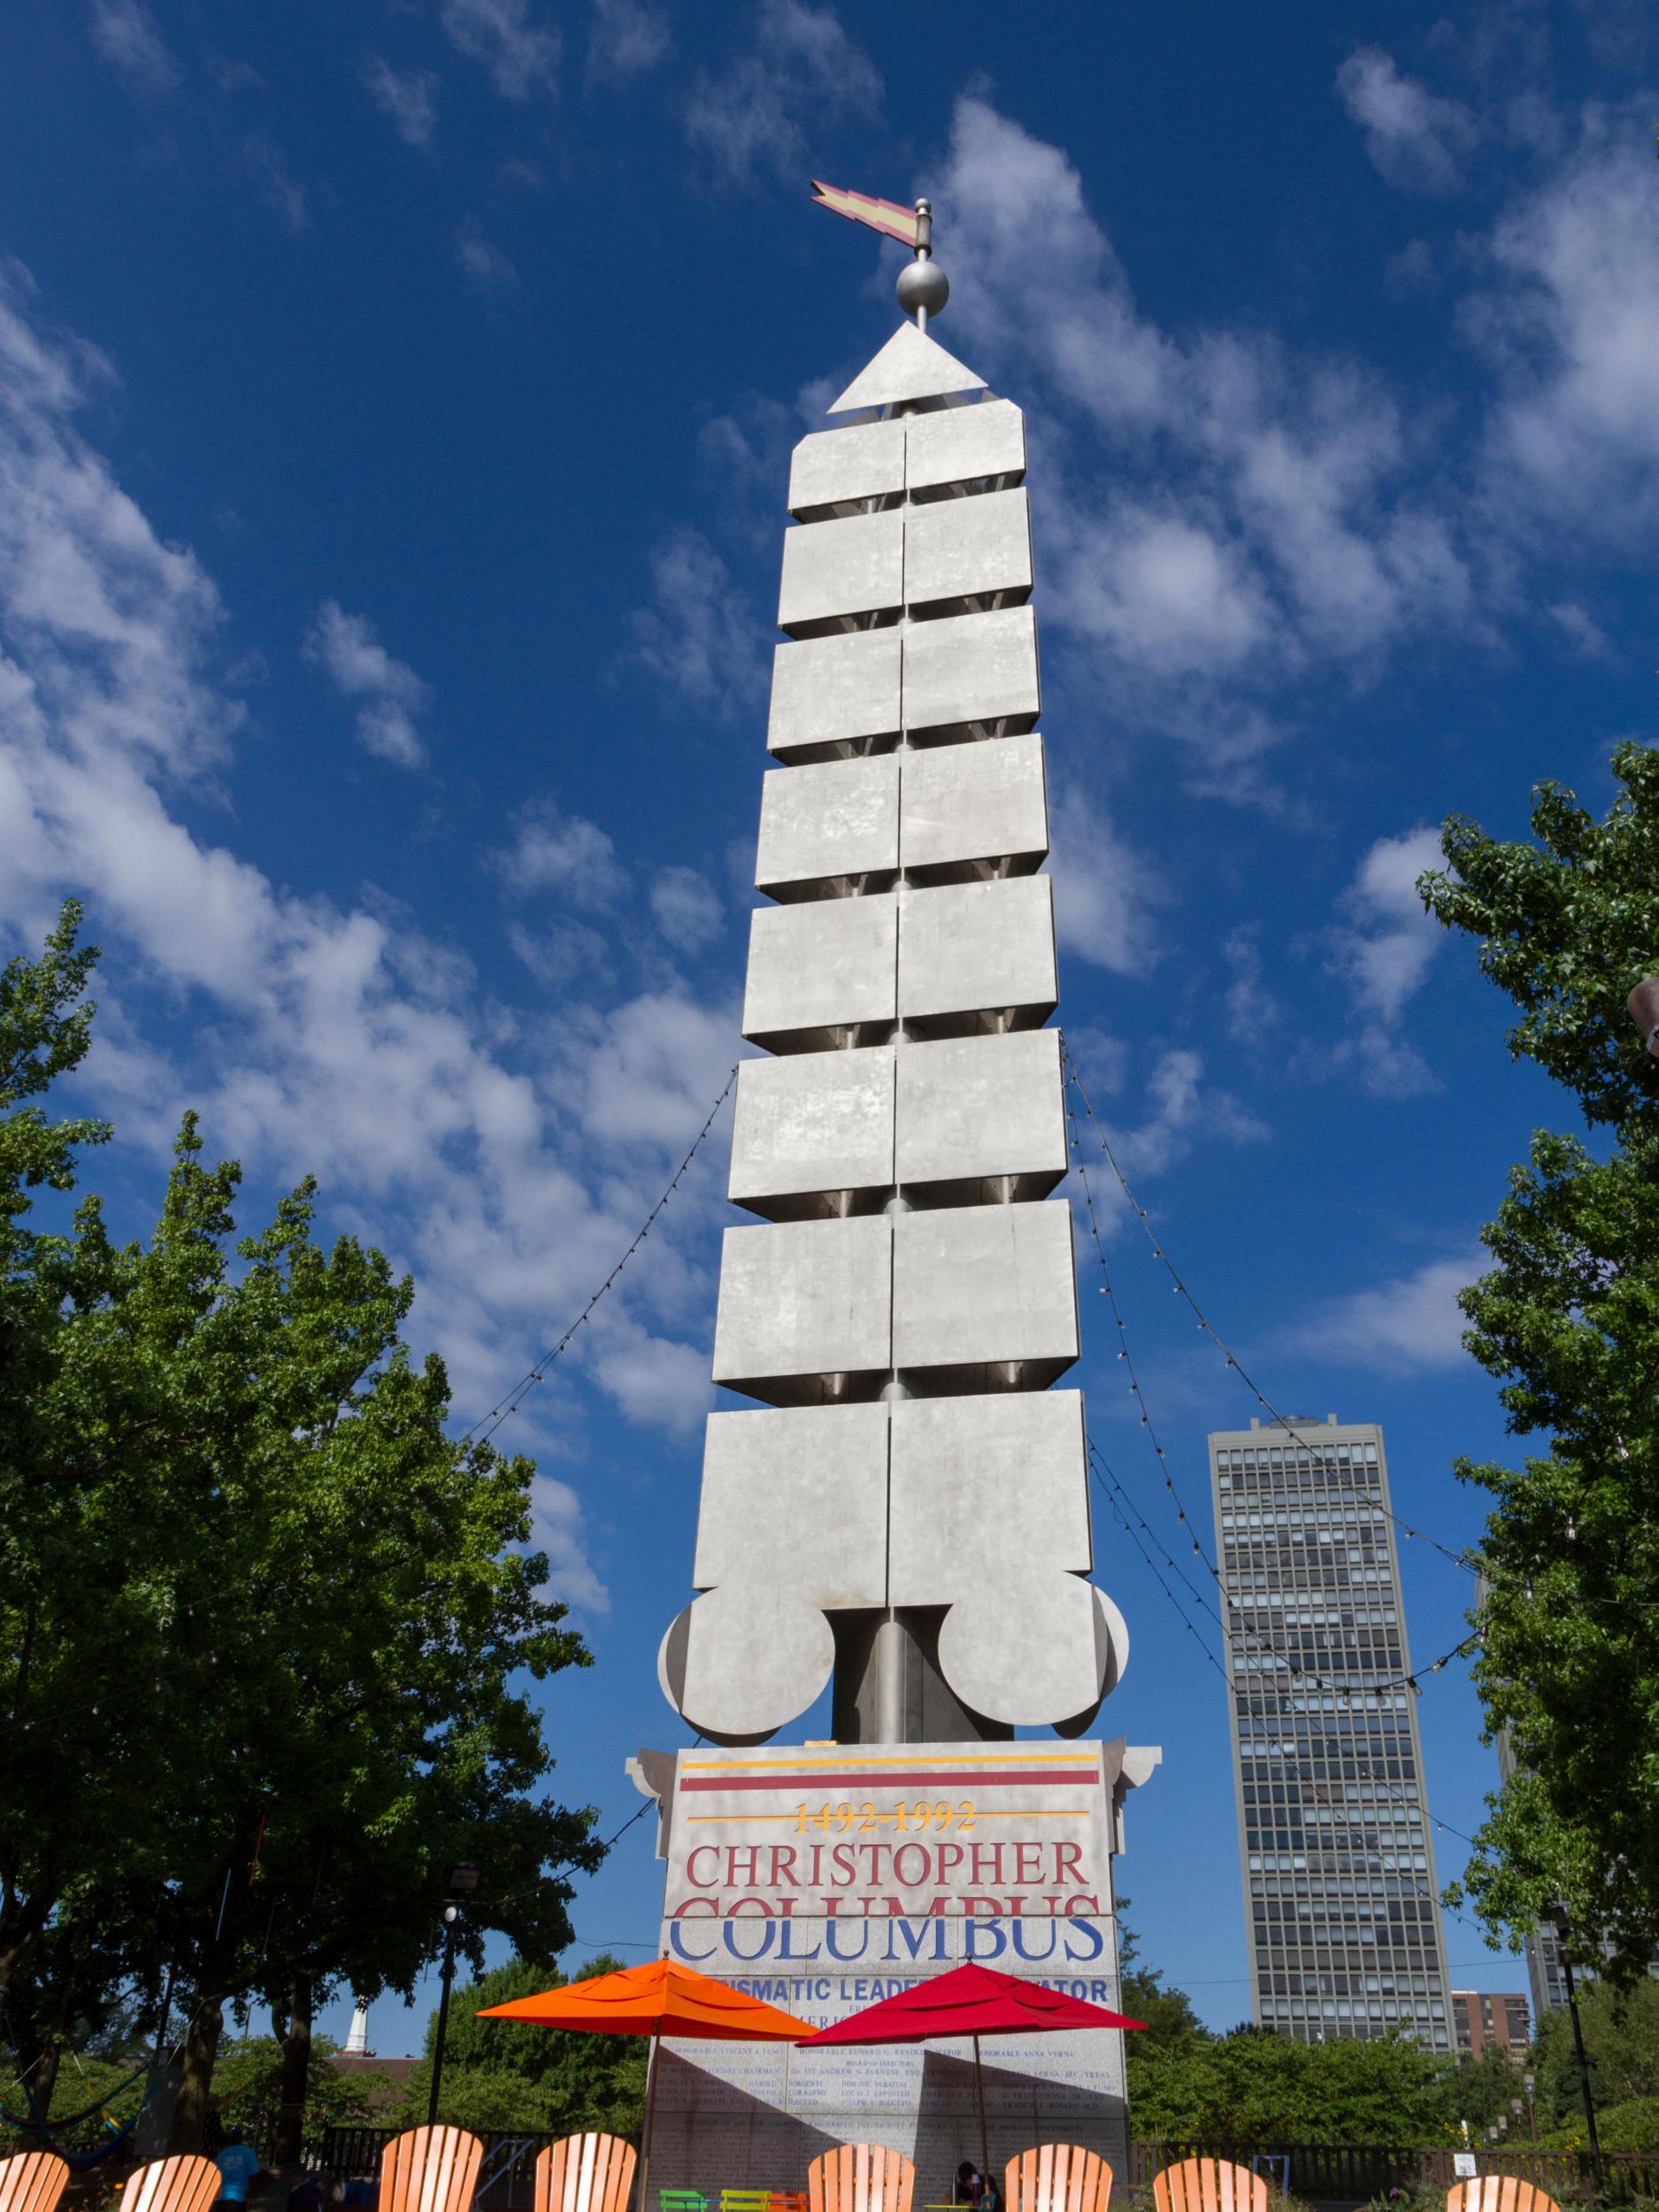 The Columbus Monument (1992) in Philadelphia, designed by Venturi